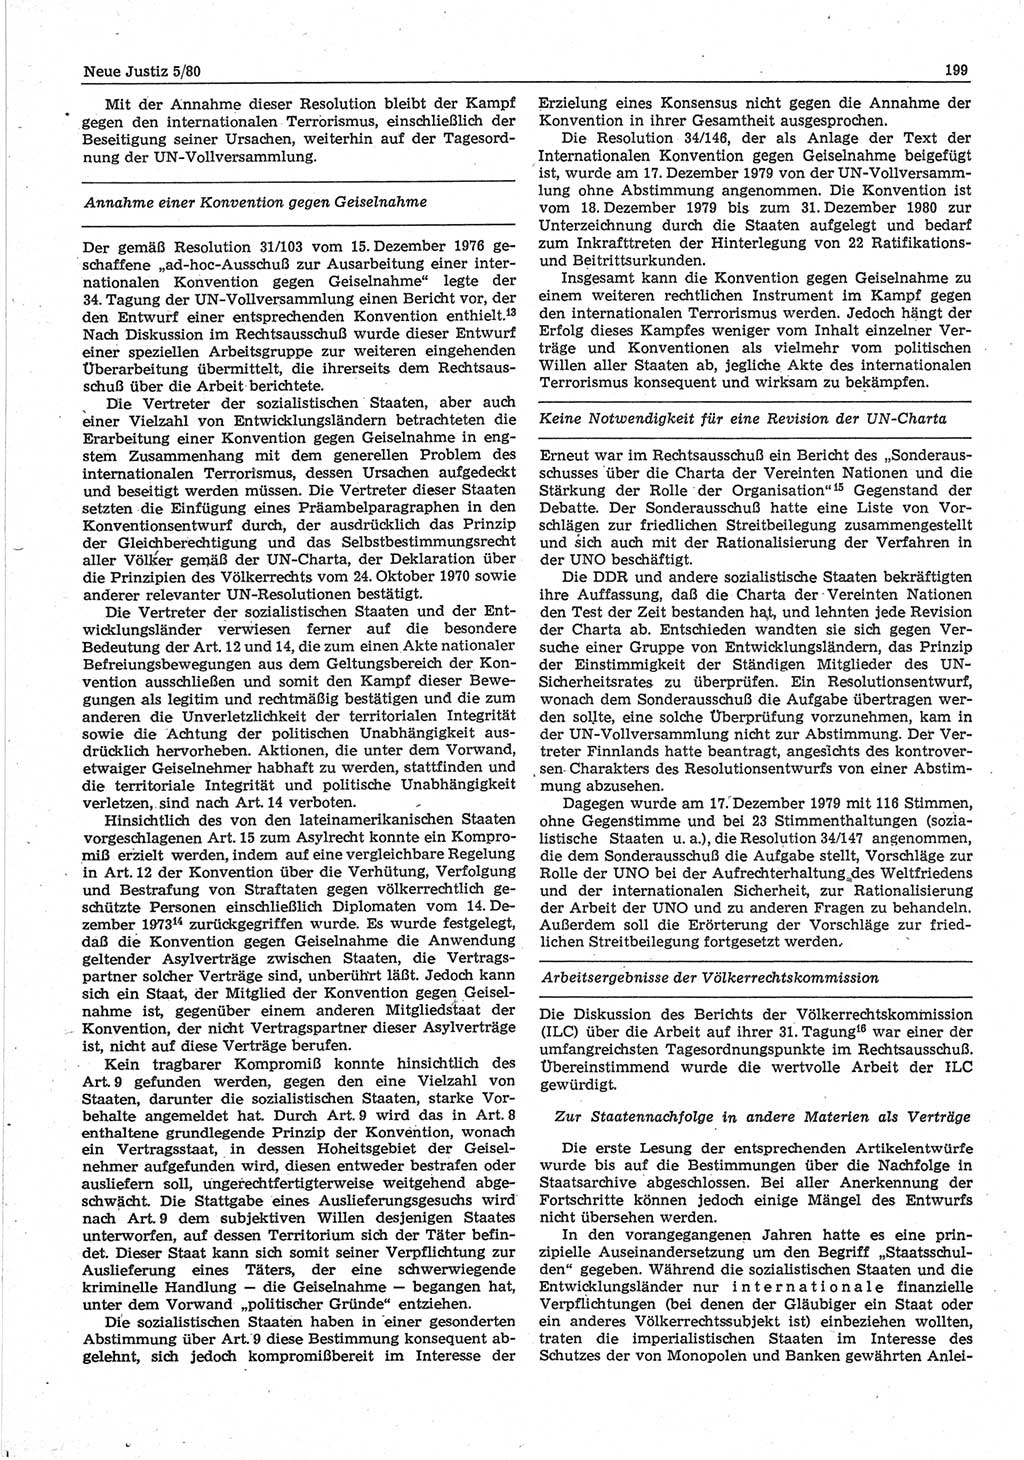 Neue Justiz (NJ), Zeitschrift für sozialistisches Recht und Gesetzlichkeit [Deutsche Demokratische Republik (DDR)], 34. Jahrgang 1980, Seite 199 (NJ DDR 1980, S. 199)